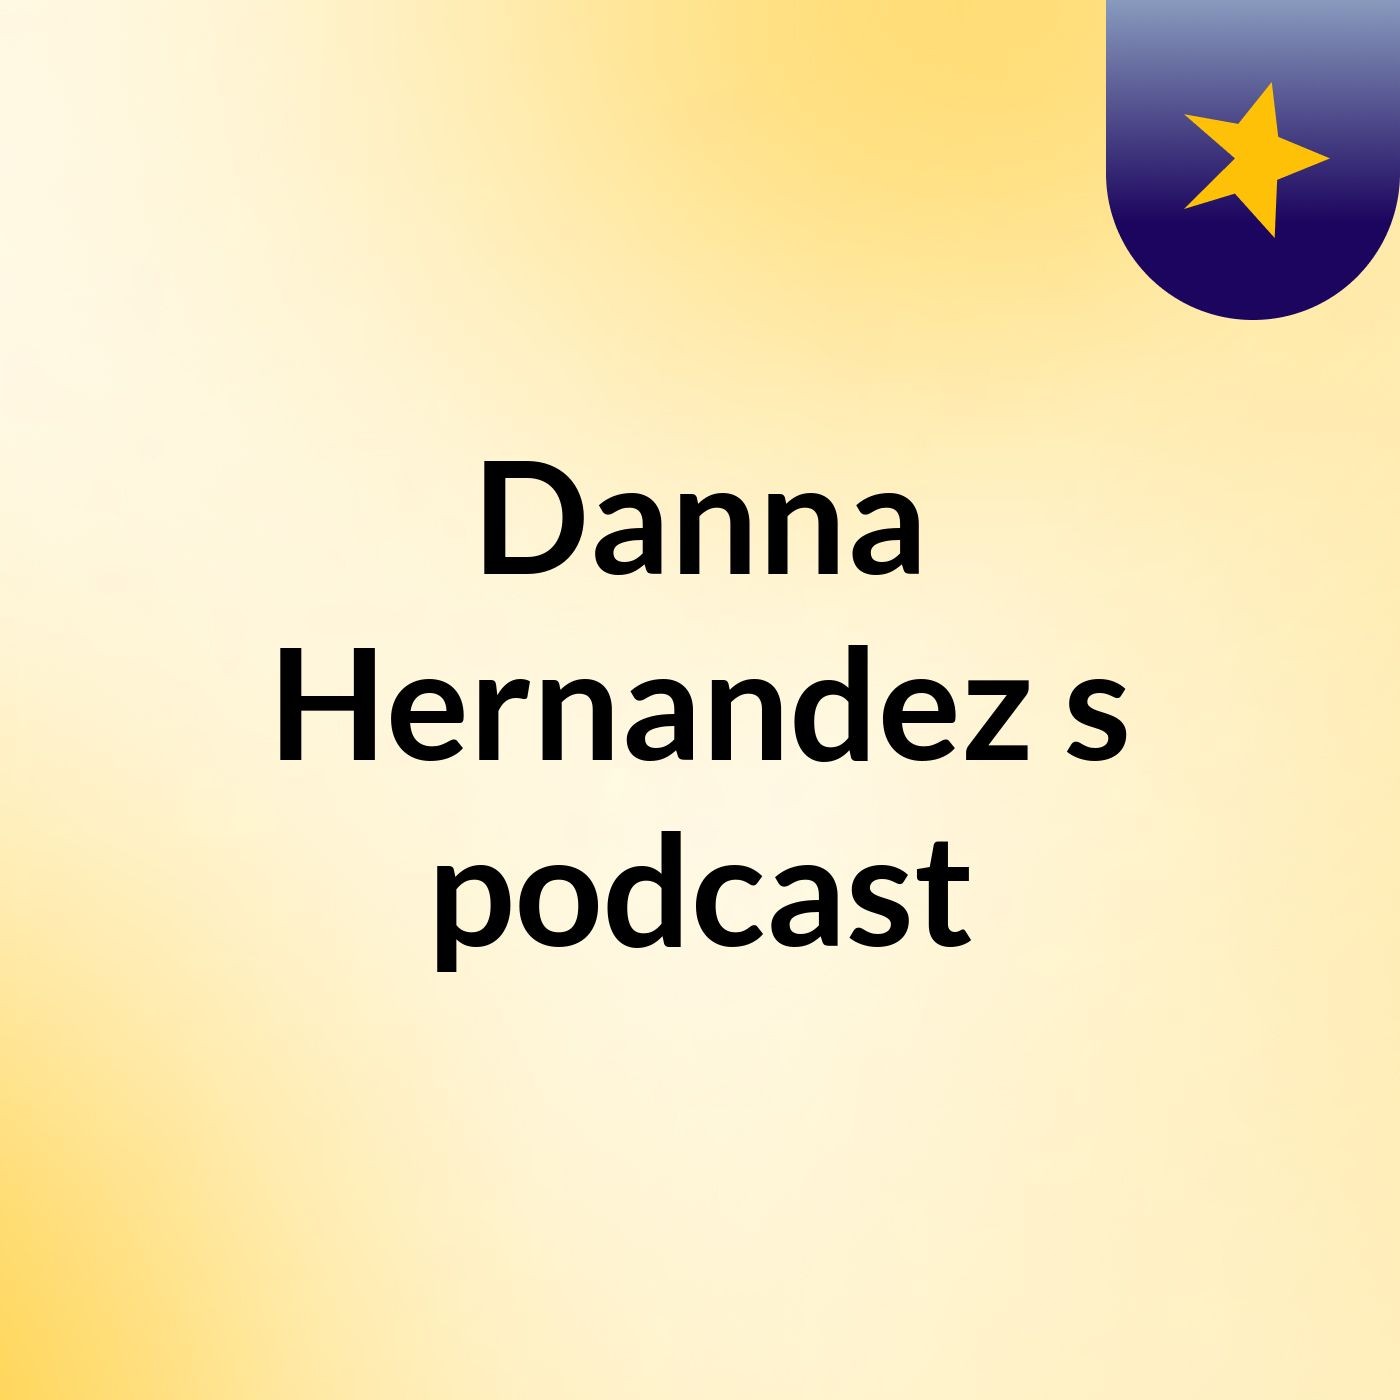 Danna Hernandez's podcast